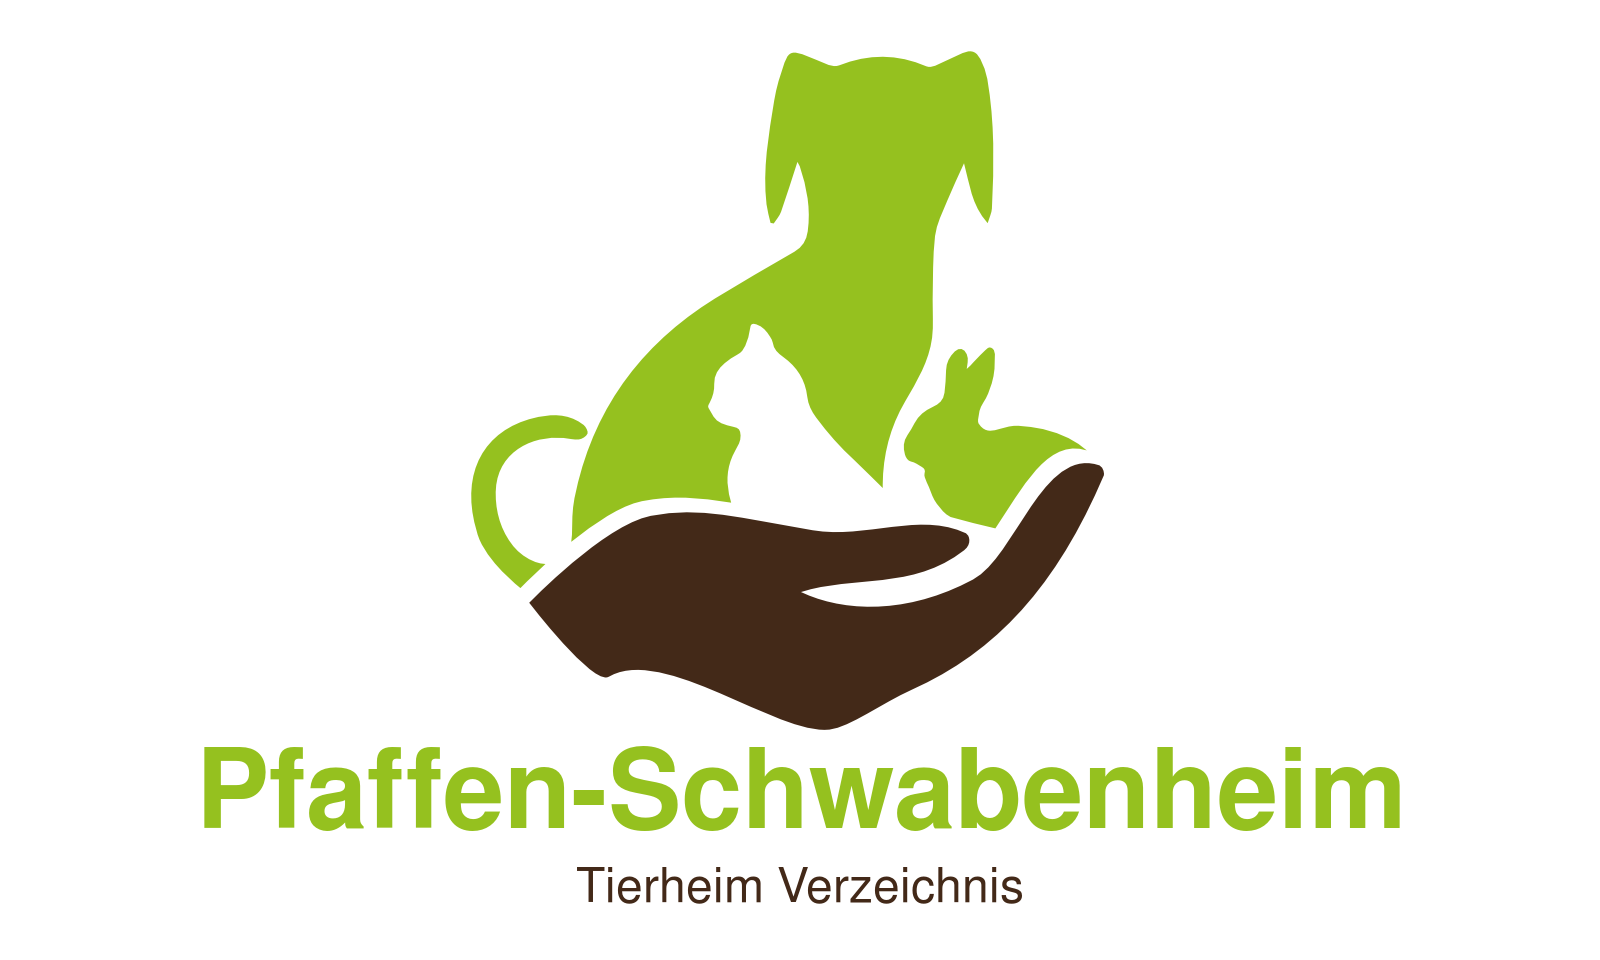 Tierheim Pfaffen-Schwabenheim